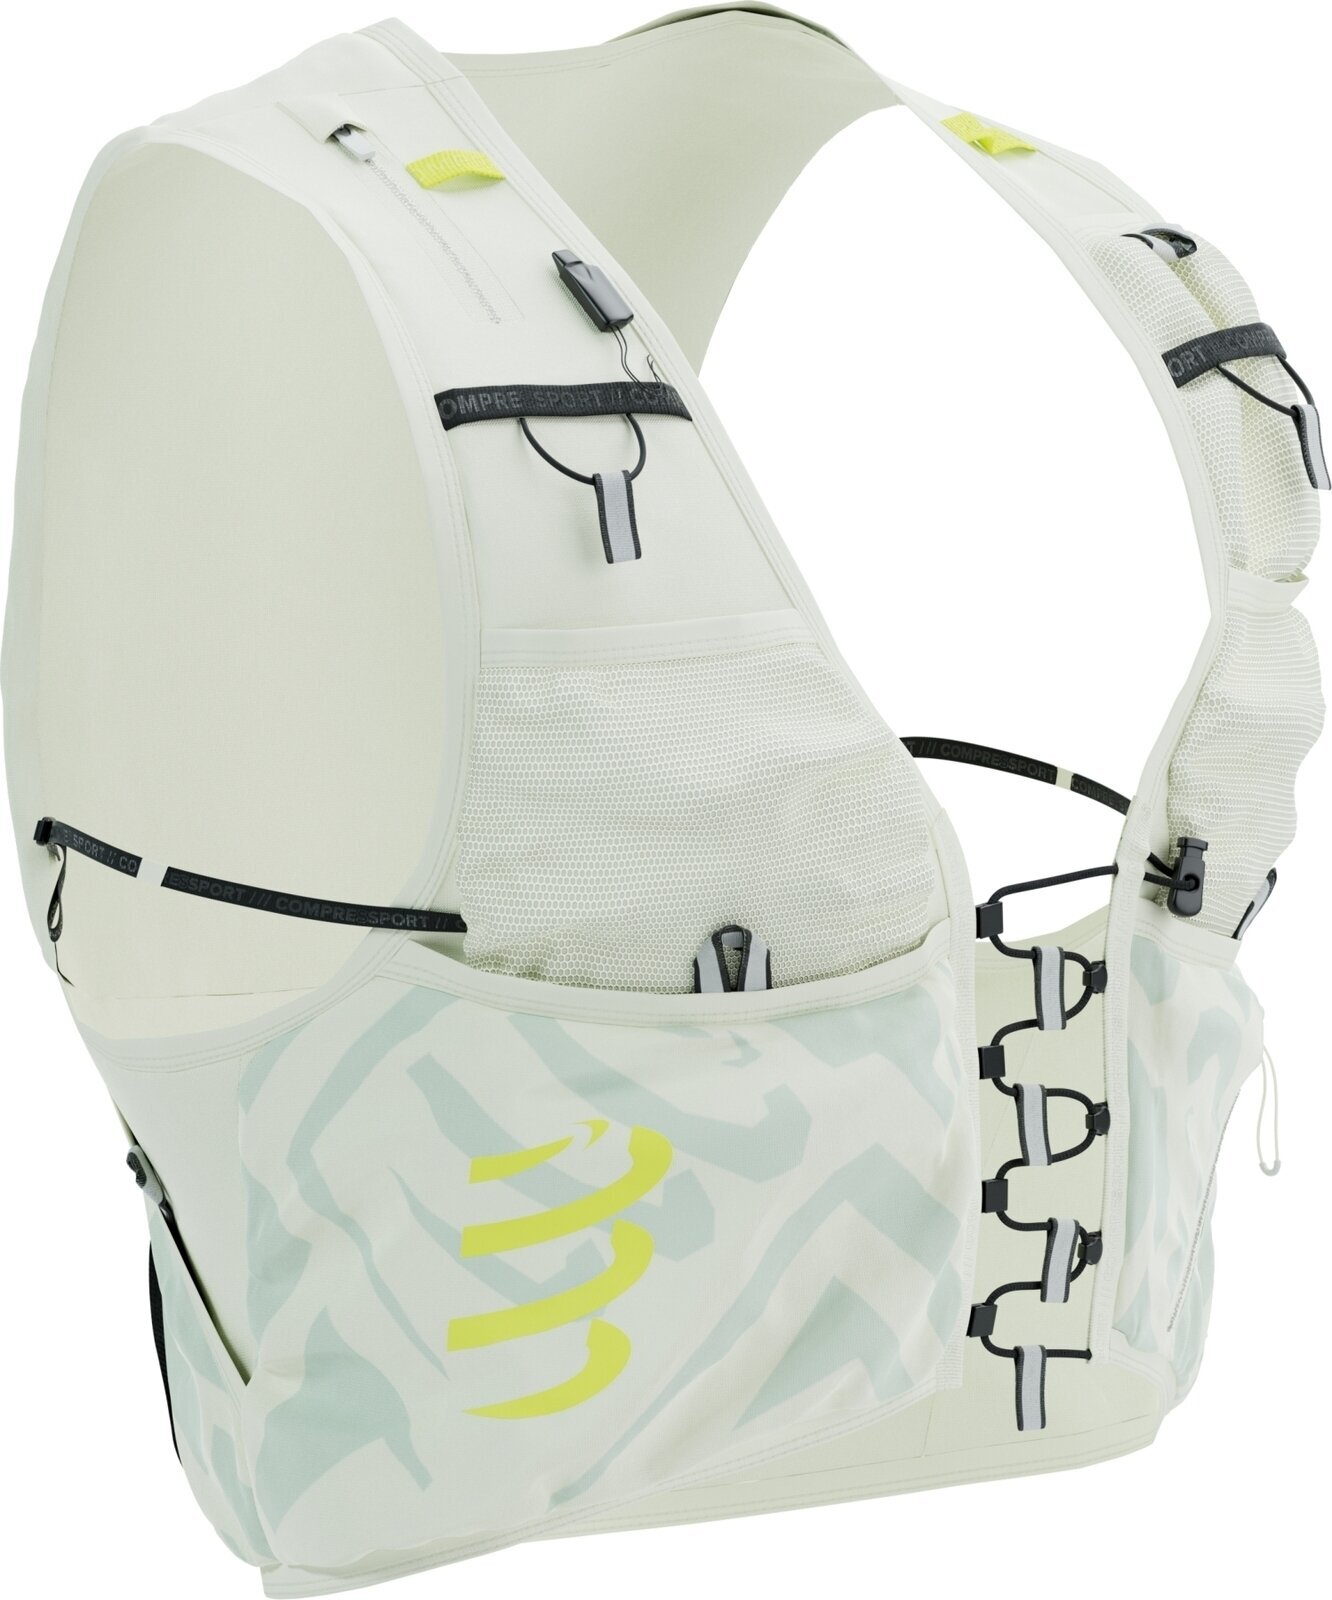 Plecak do biegania Compressport UltRun S Pack Evo 10 Sugar Swizzle/Ice Flow/Safety Yellow XL Plecak do biegania